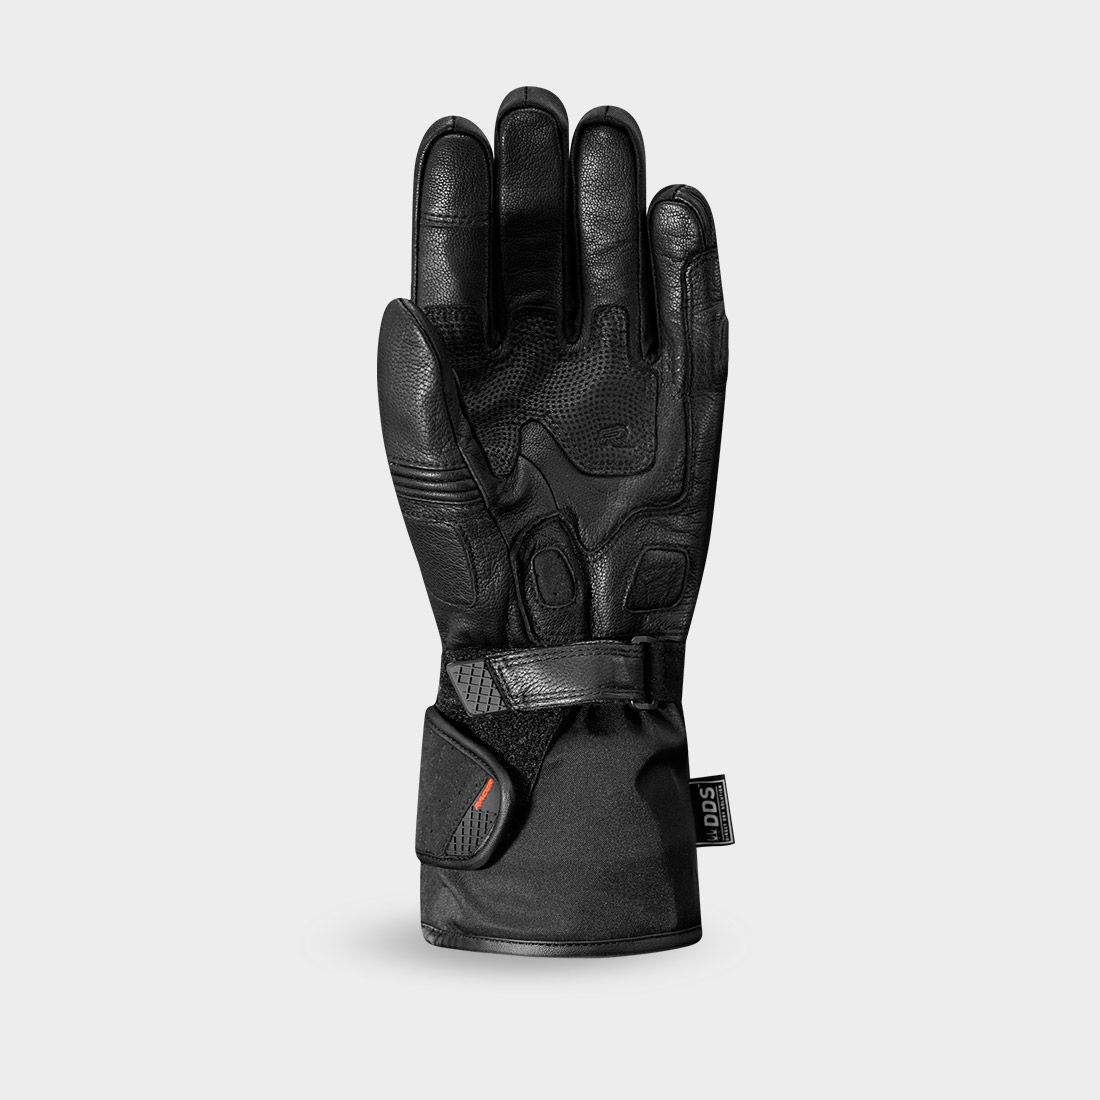 gloves MAVIS 2, RACER (black)